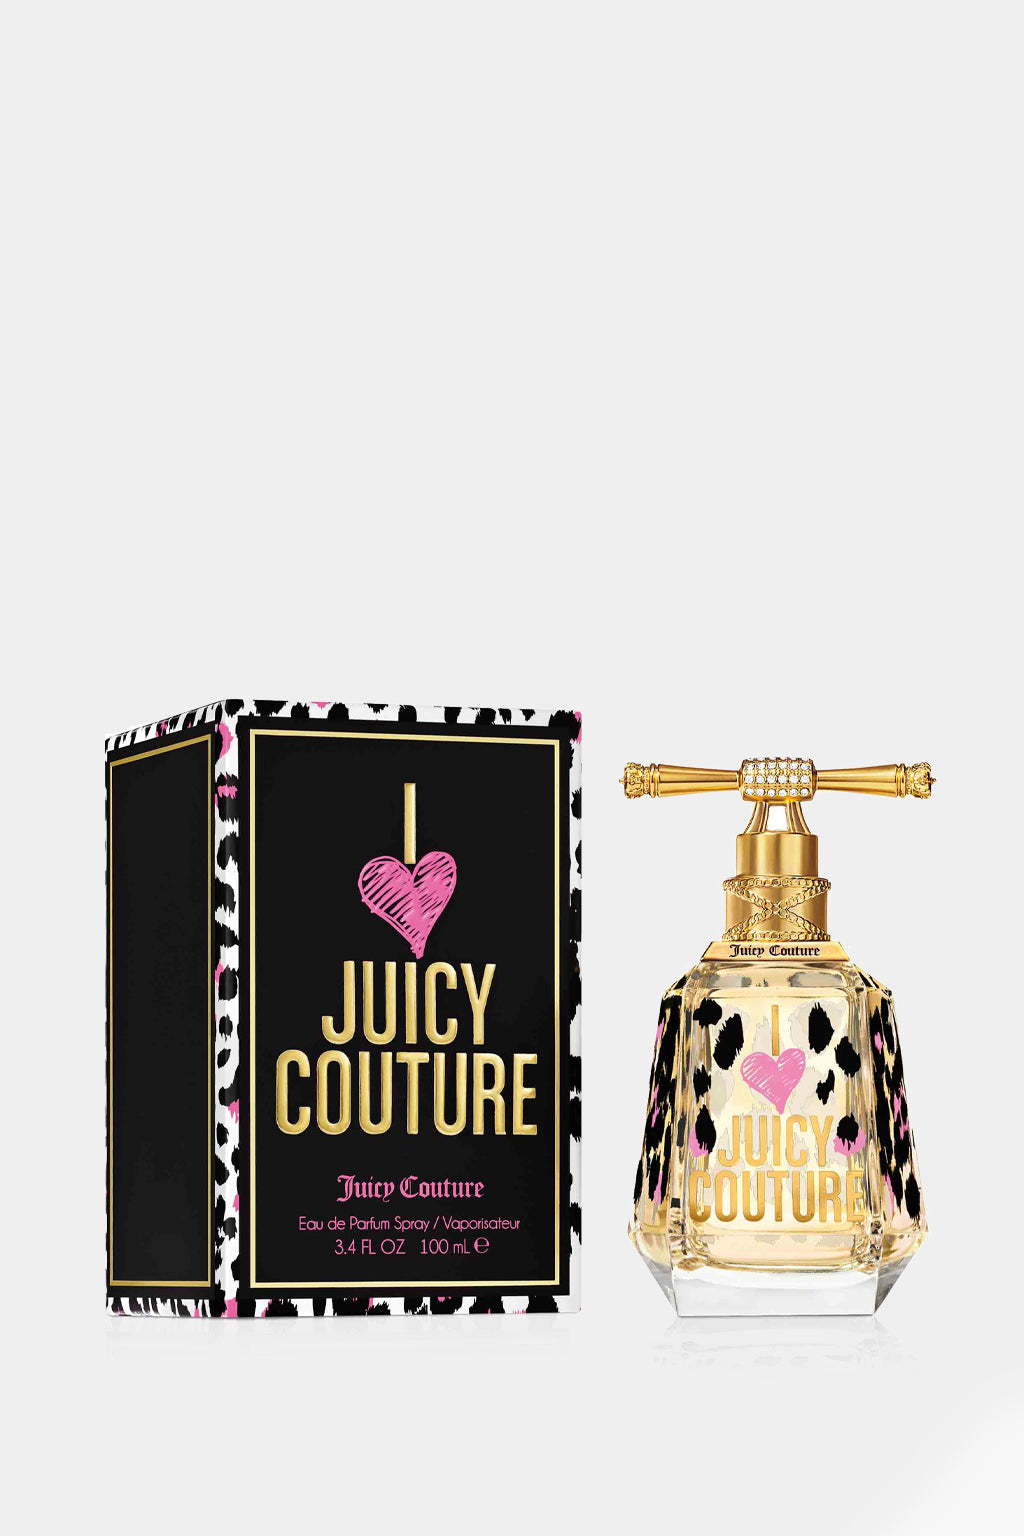 Juicy Couture - I Love Juicy Couture Eau de Parfum